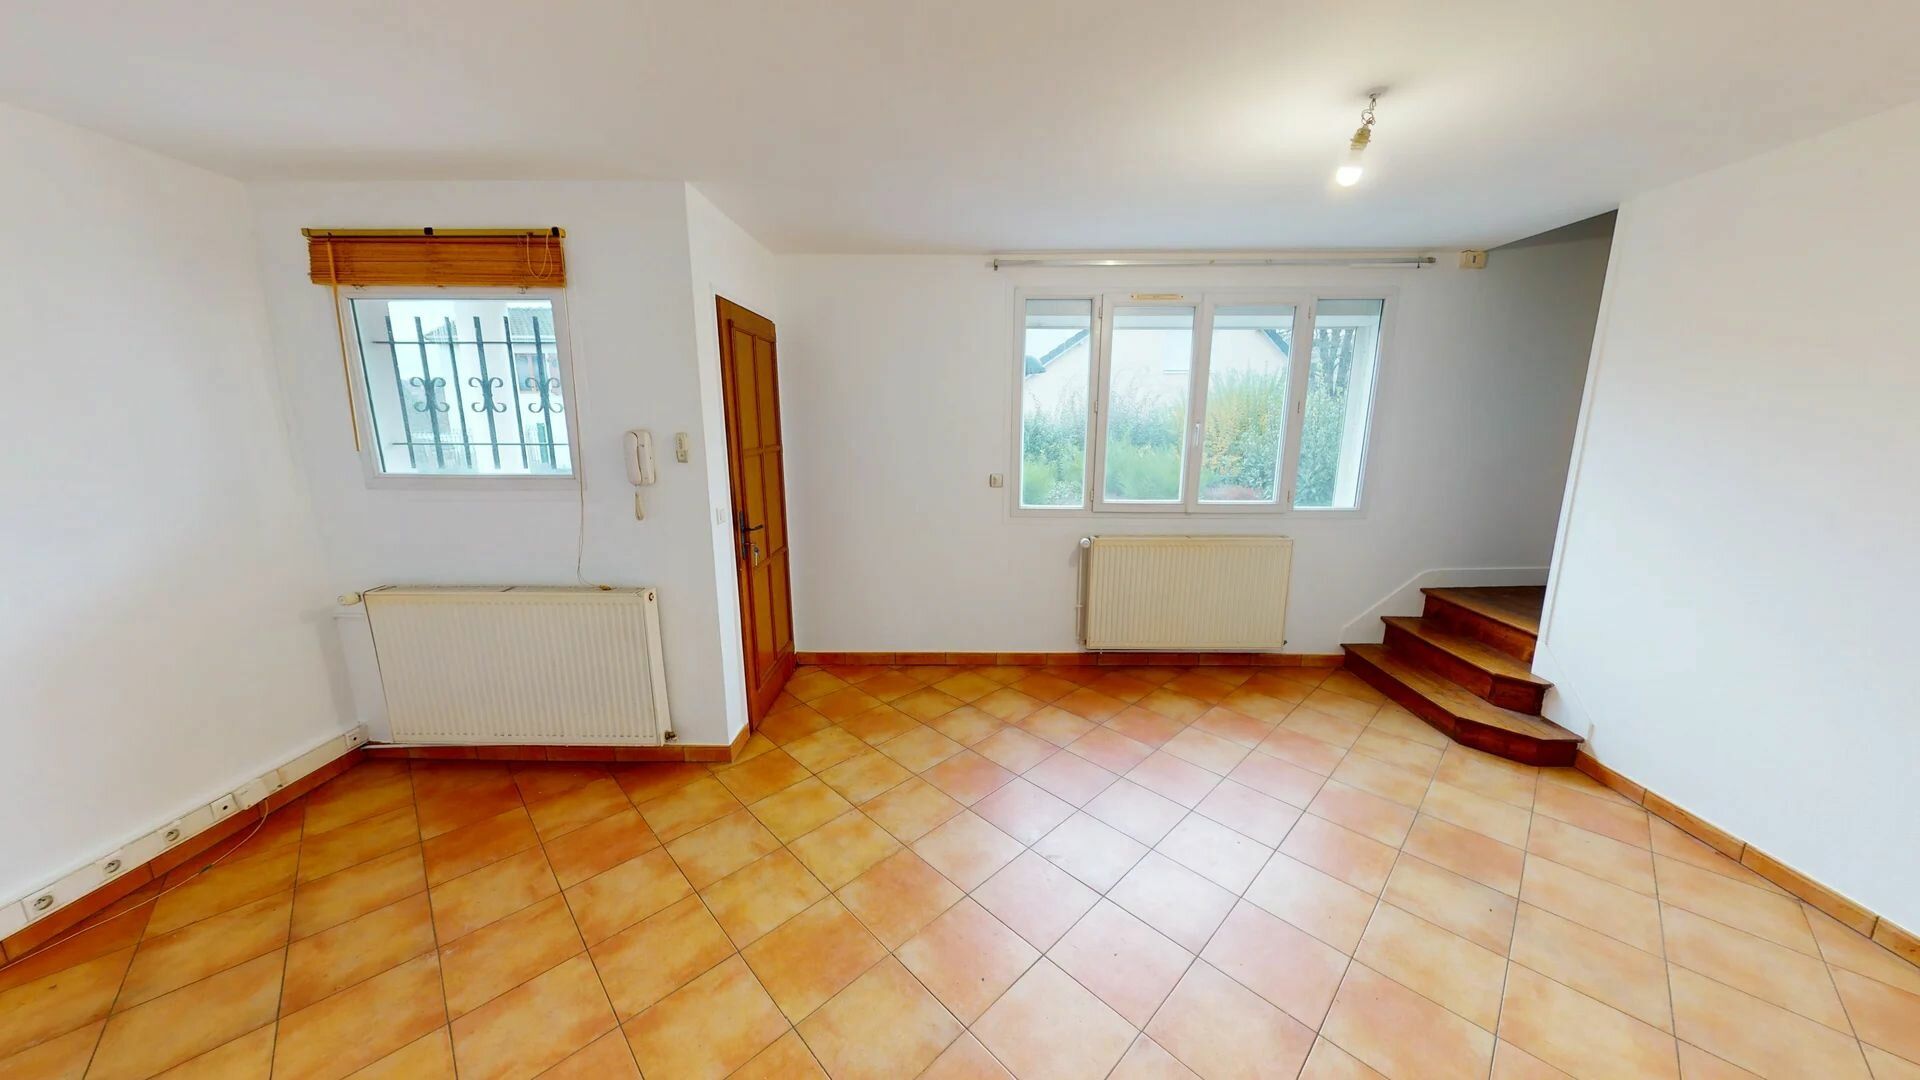 Maison à vendre 4 66.9m2 à Thorigny-sur-Marne vignette-2